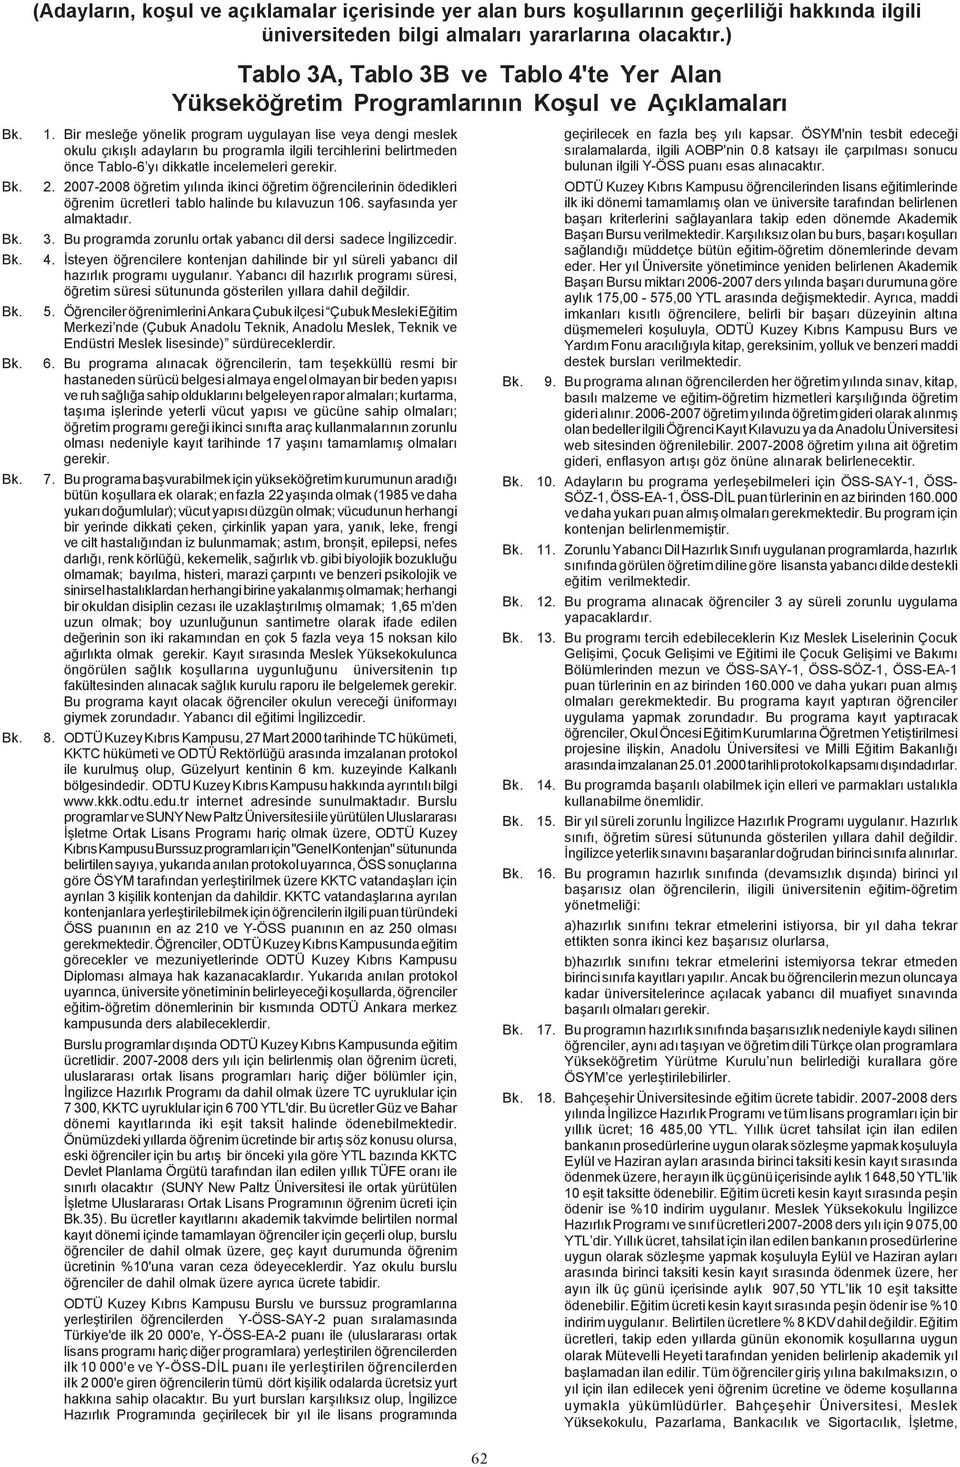 2007-2008 öðretim yýlýnda ikinci öðretim öðrencilerinin ödedikleri öðrenim ücretleri tablo halinde bu kýlavuzun 106. sayfasýnda yer almaktadýr. 3.